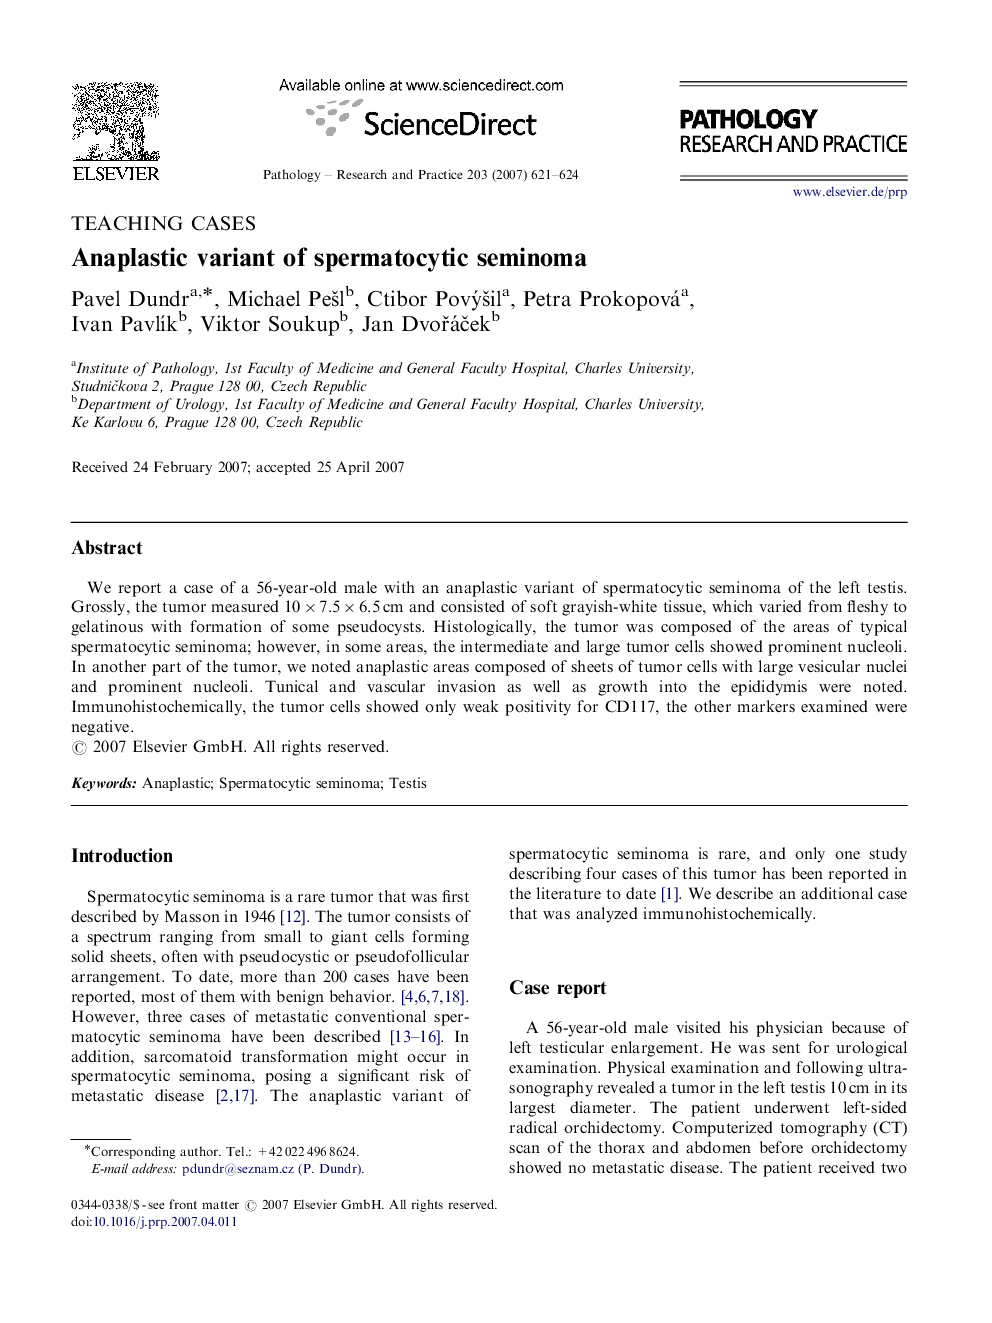 Anaplastic variant of spermatocytic seminoma